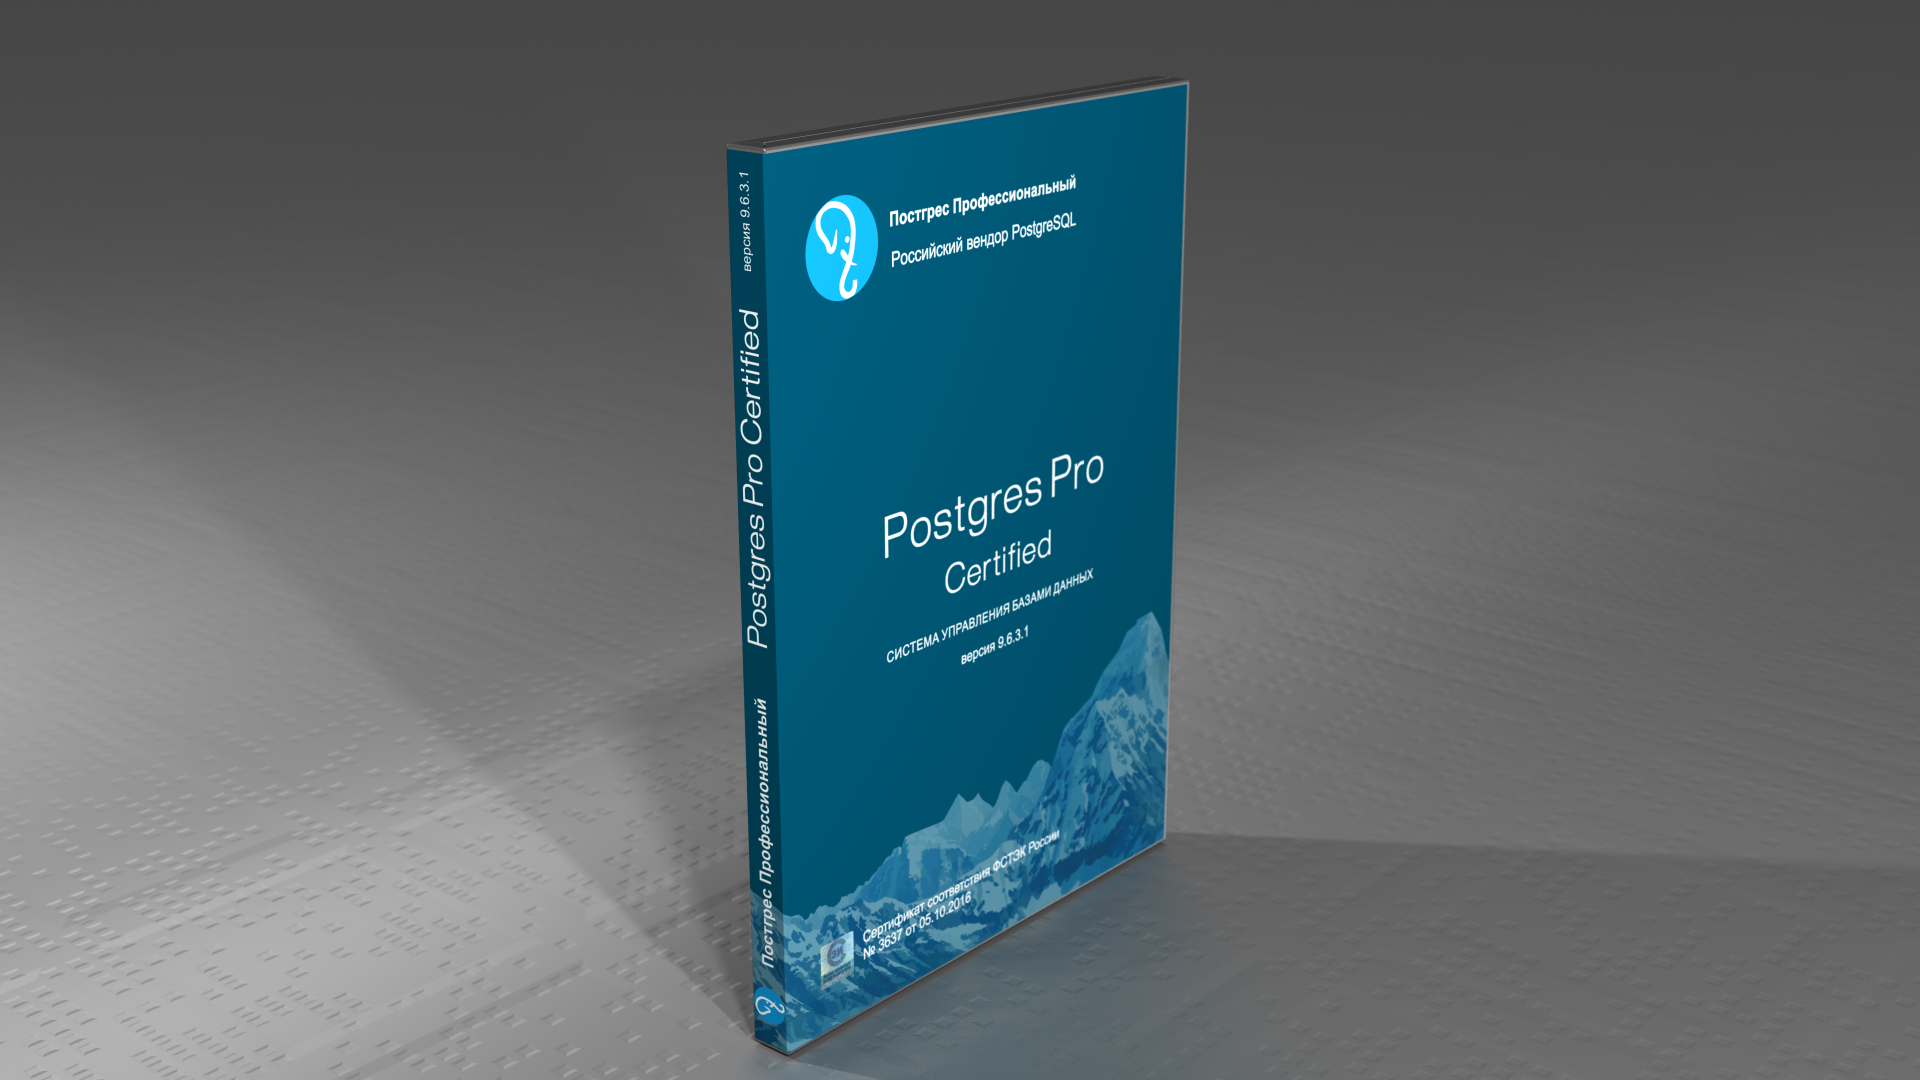 Компания Postgres Professional завершила инспекционный контроль новой версии российской СУБД Postgres Pro Certified, основанной на Postgres Pro 9.6.3.1. Обладатели сертифицированной версии СУБД Postgres Pro получат обновление бесплатно.